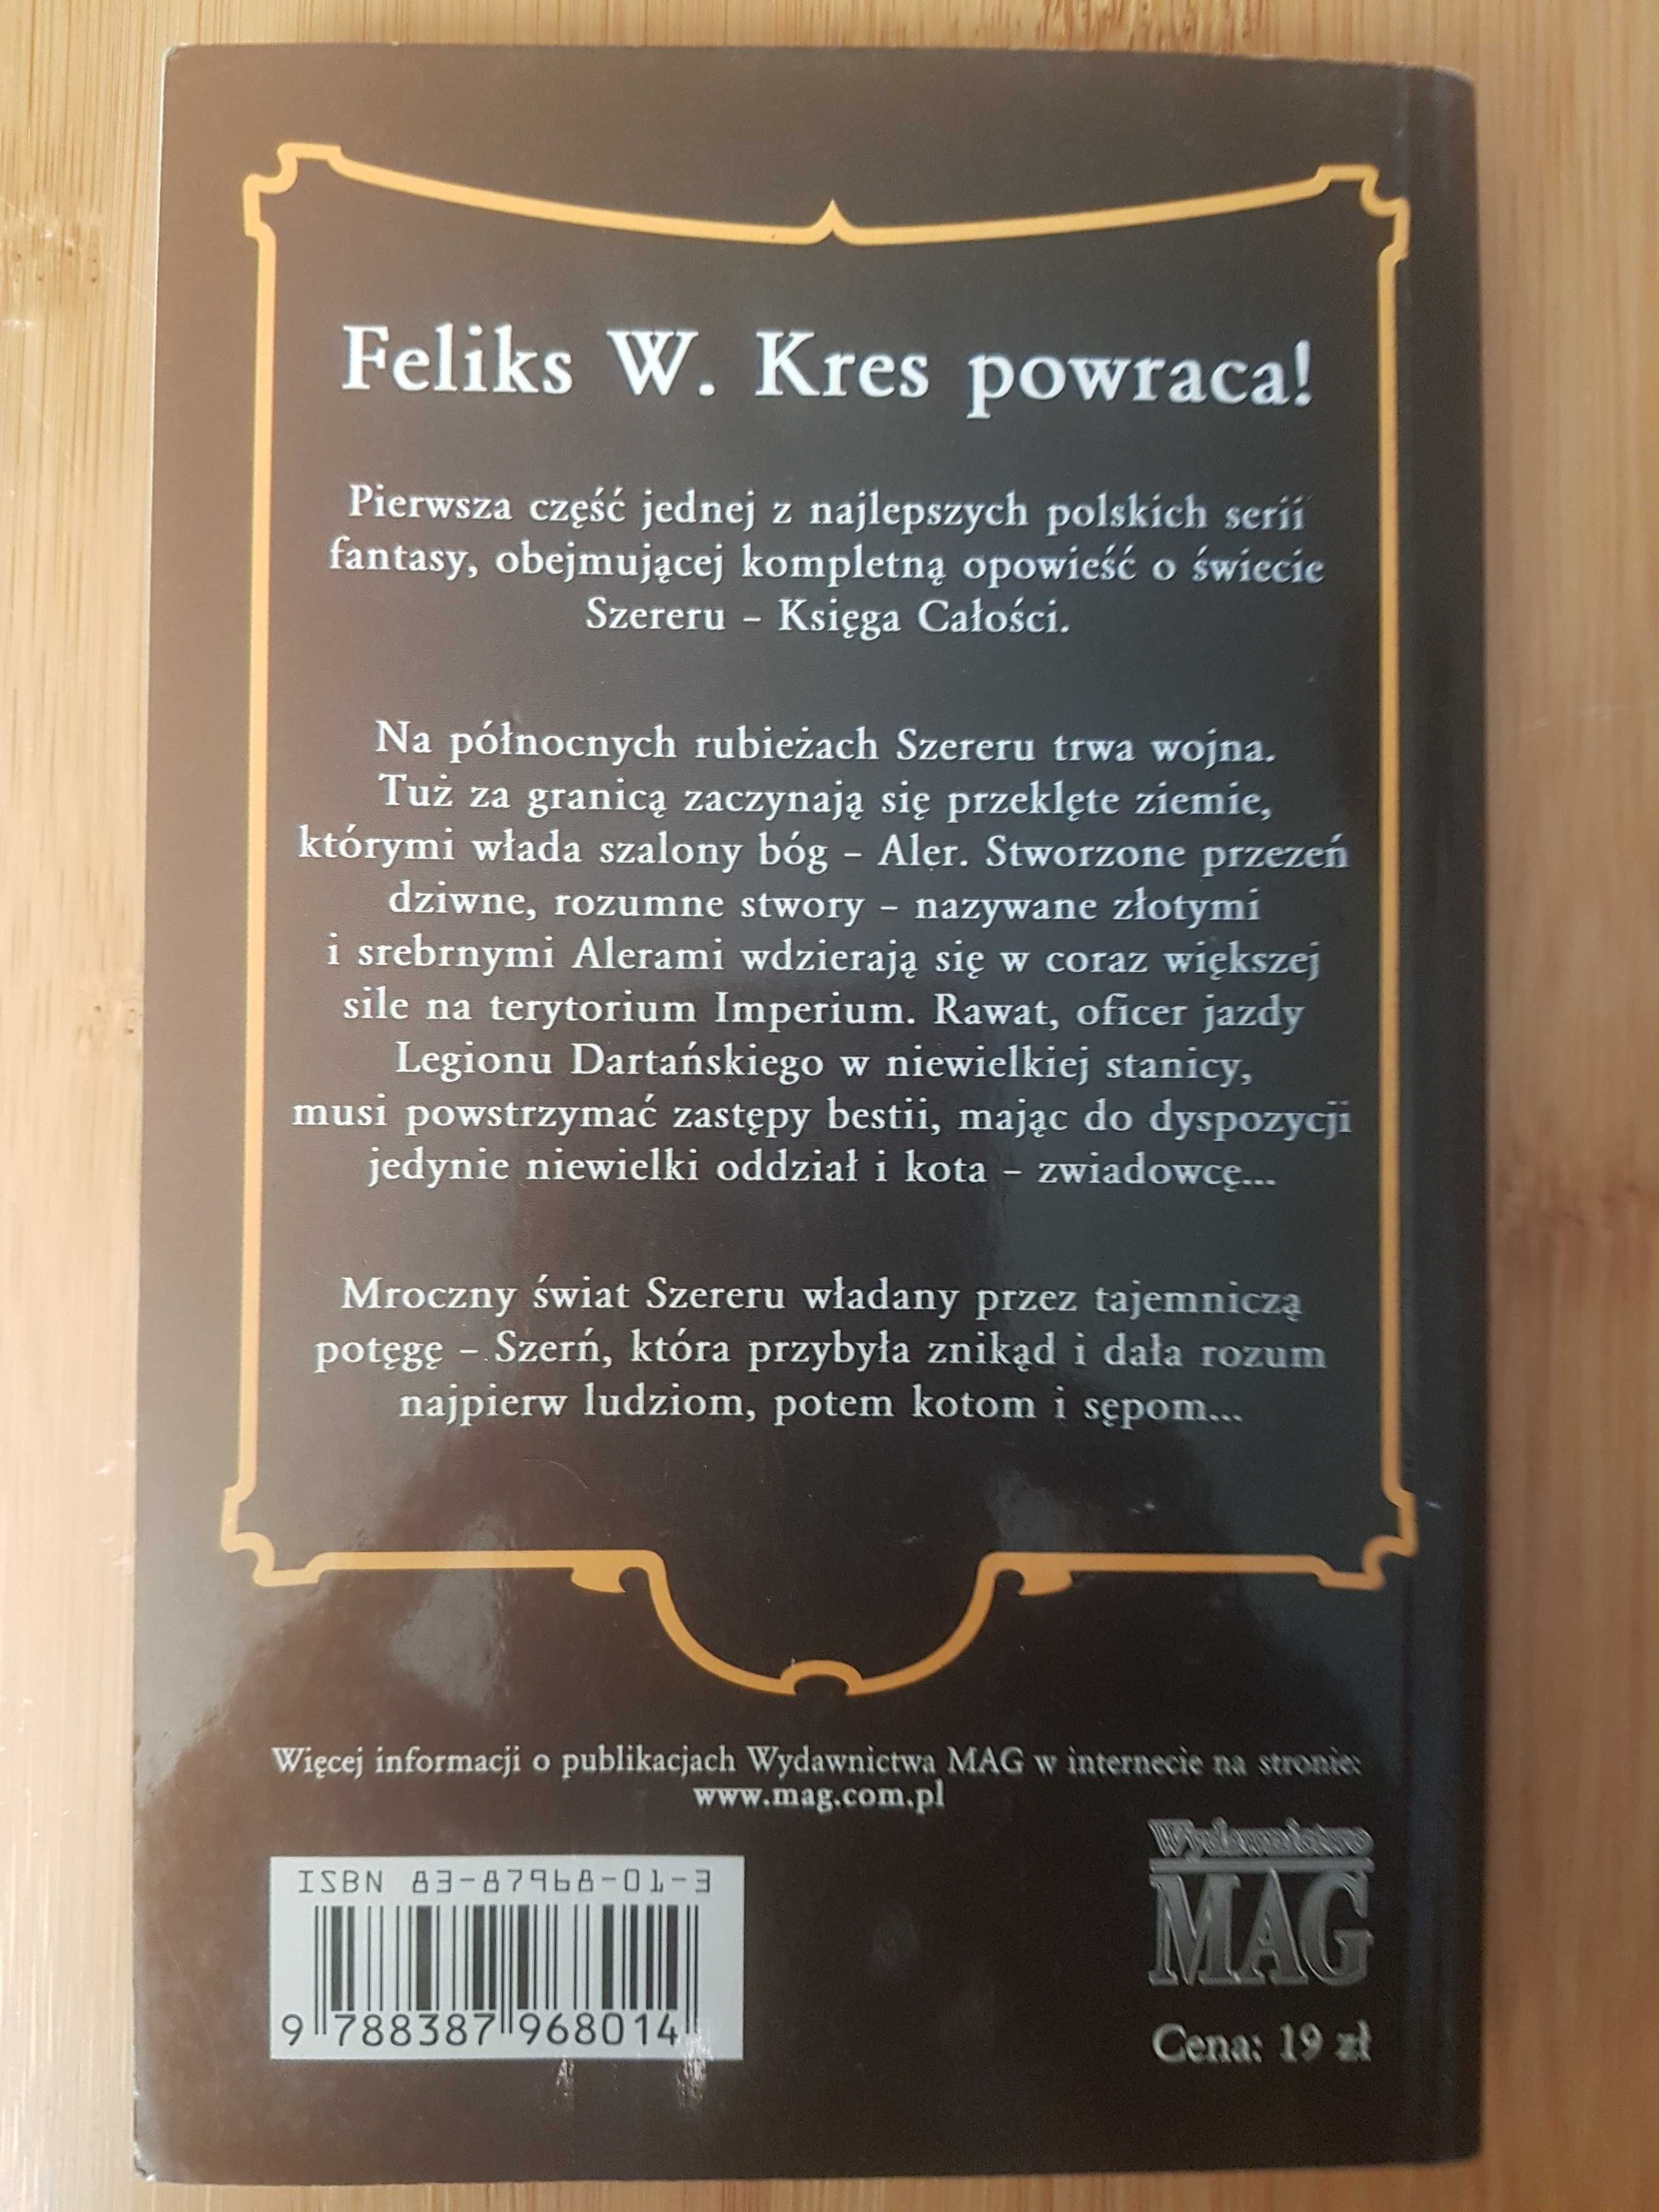 Feliks W. Kres, Północna Granica, Cykl: Księga Całości, fantasy